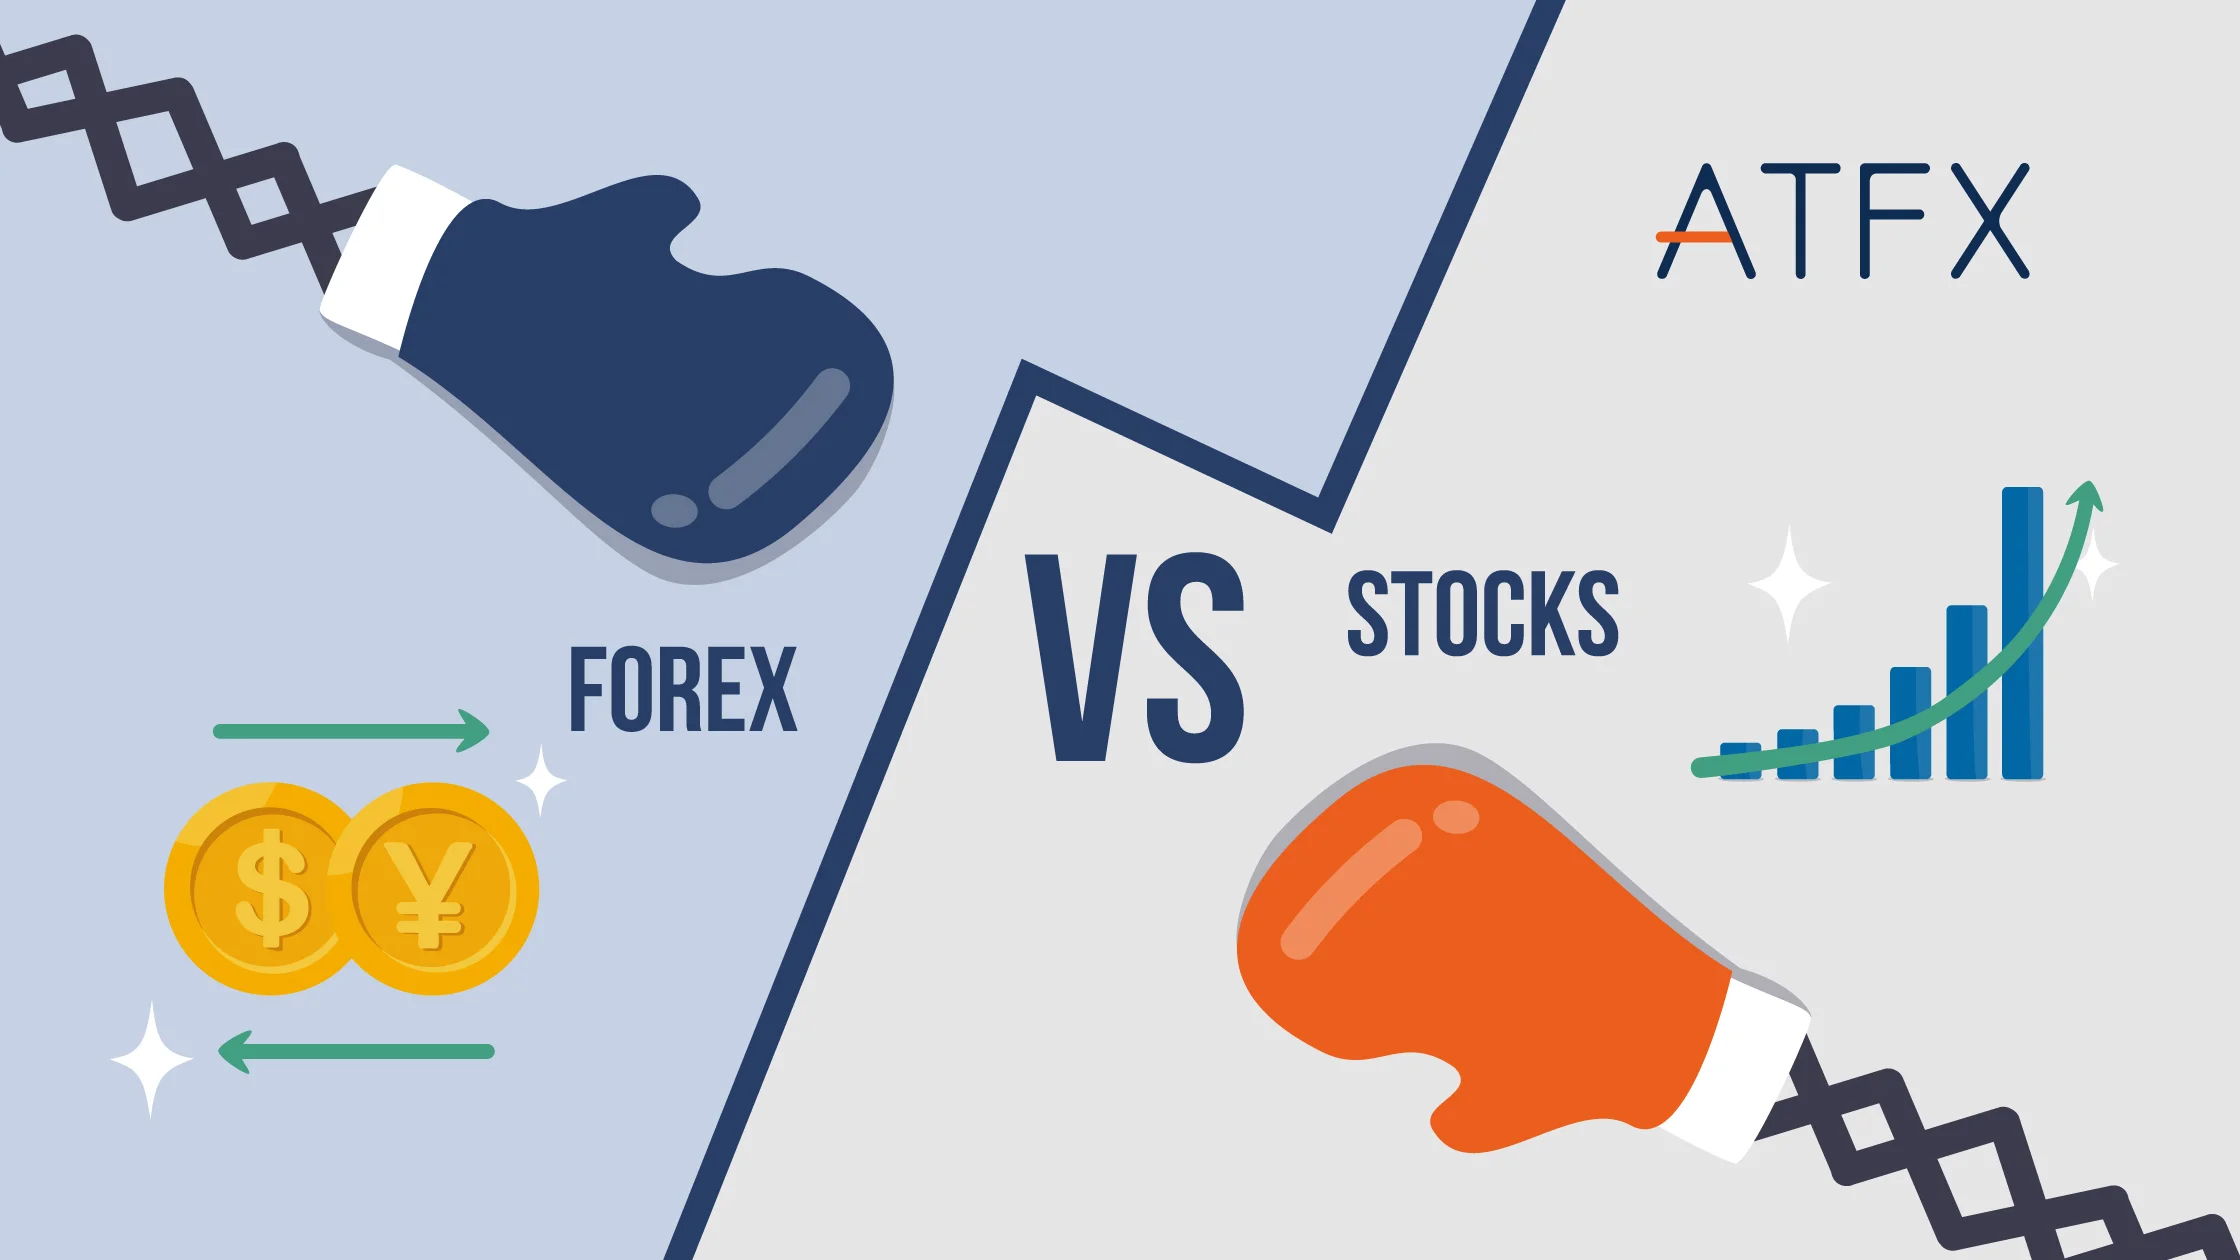 forex vs stocks